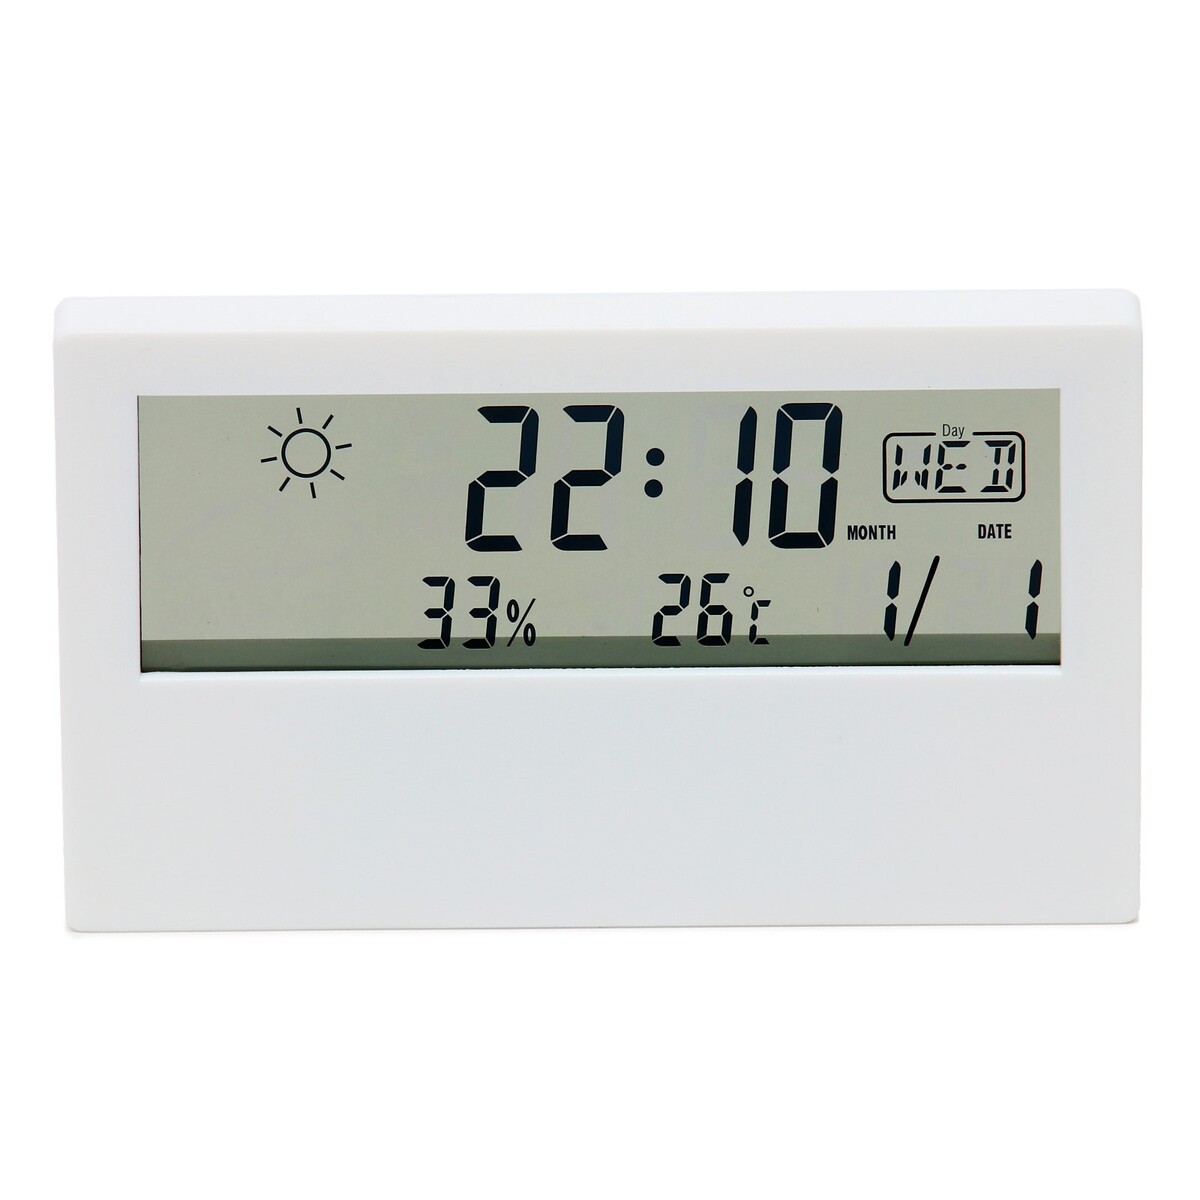 Часы настольные электронные: будильник, термометр, календарь, гигрометр, 13.3х7.4 см, белые метеостанция ltr 06 комнатный гигрометр будильник 1хlr1140